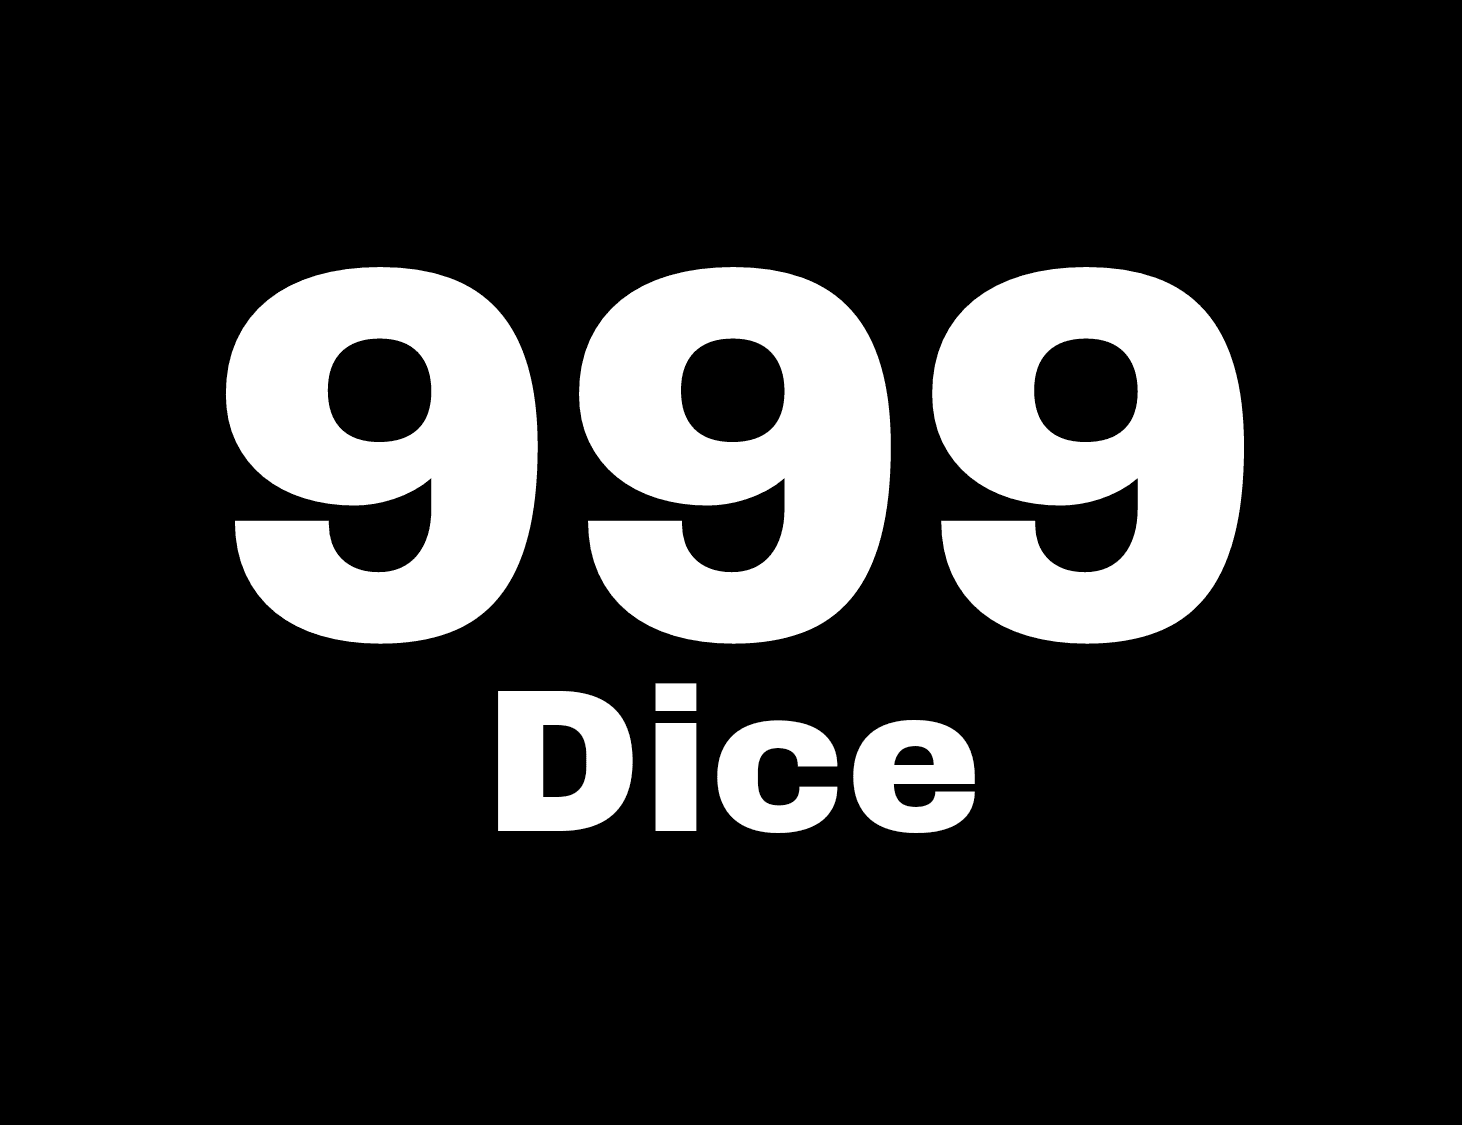 Diartikel ke tiga puluh tiga ini, Saya akan memberikan Tutorial cara mendaftar dan bermain 999Dice hingga mendapatkan Bitcoin/Cryptocurrency.